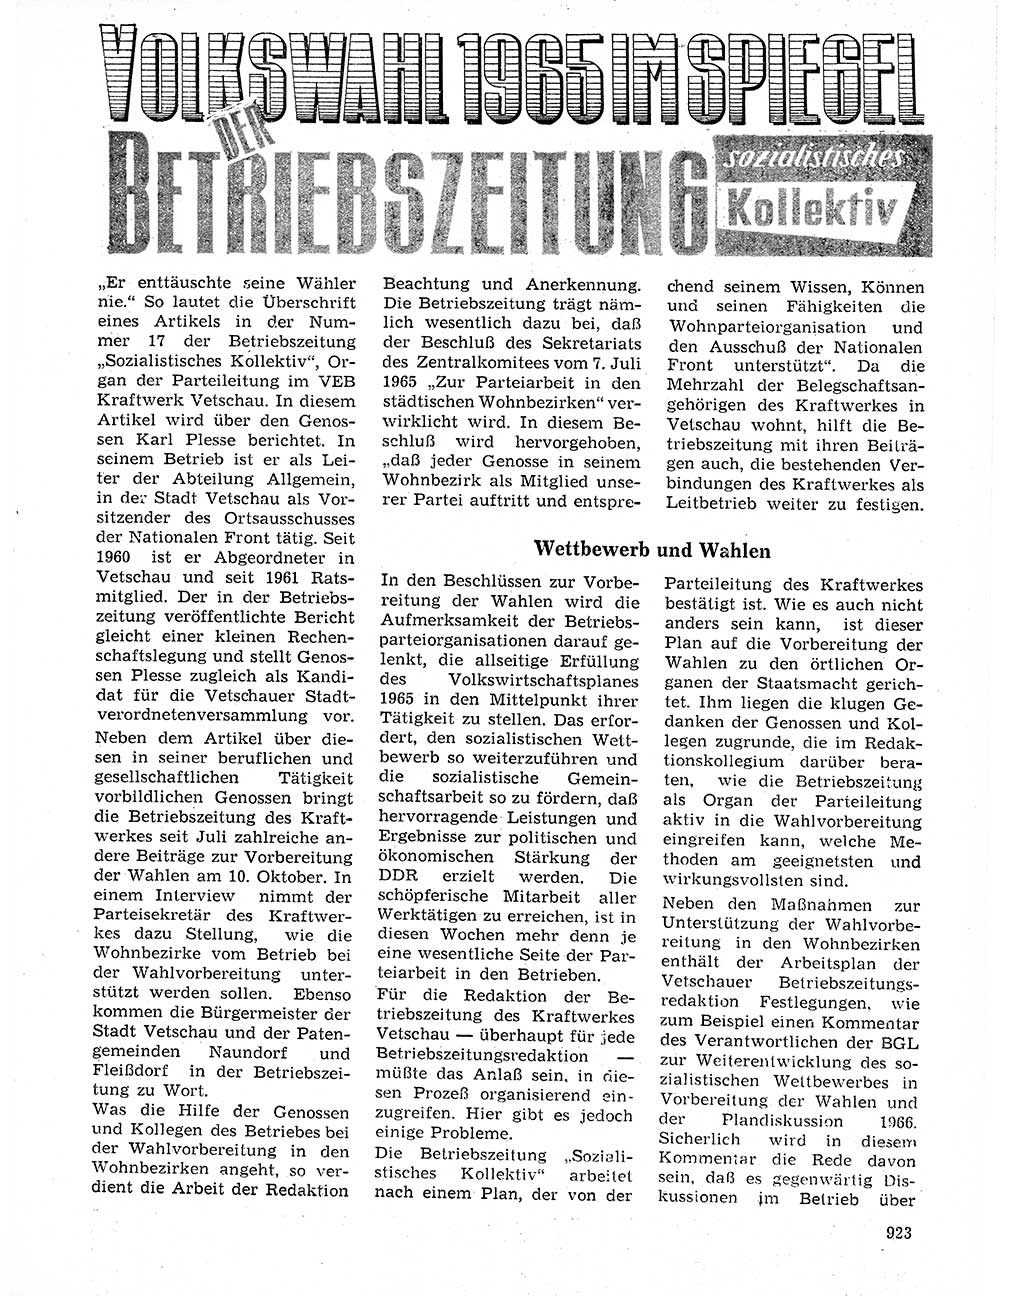 Neuer Weg (NW), Organ des Zentralkomitees (ZK) der SED (Sozialistische Einheitspartei Deutschlands) für Fragen des Parteilebens, 20. Jahrgang [Deutsche Demokratische Republik (DDR)] 1965, Seite 907 (NW ZK SED DDR 1965, S. 907)